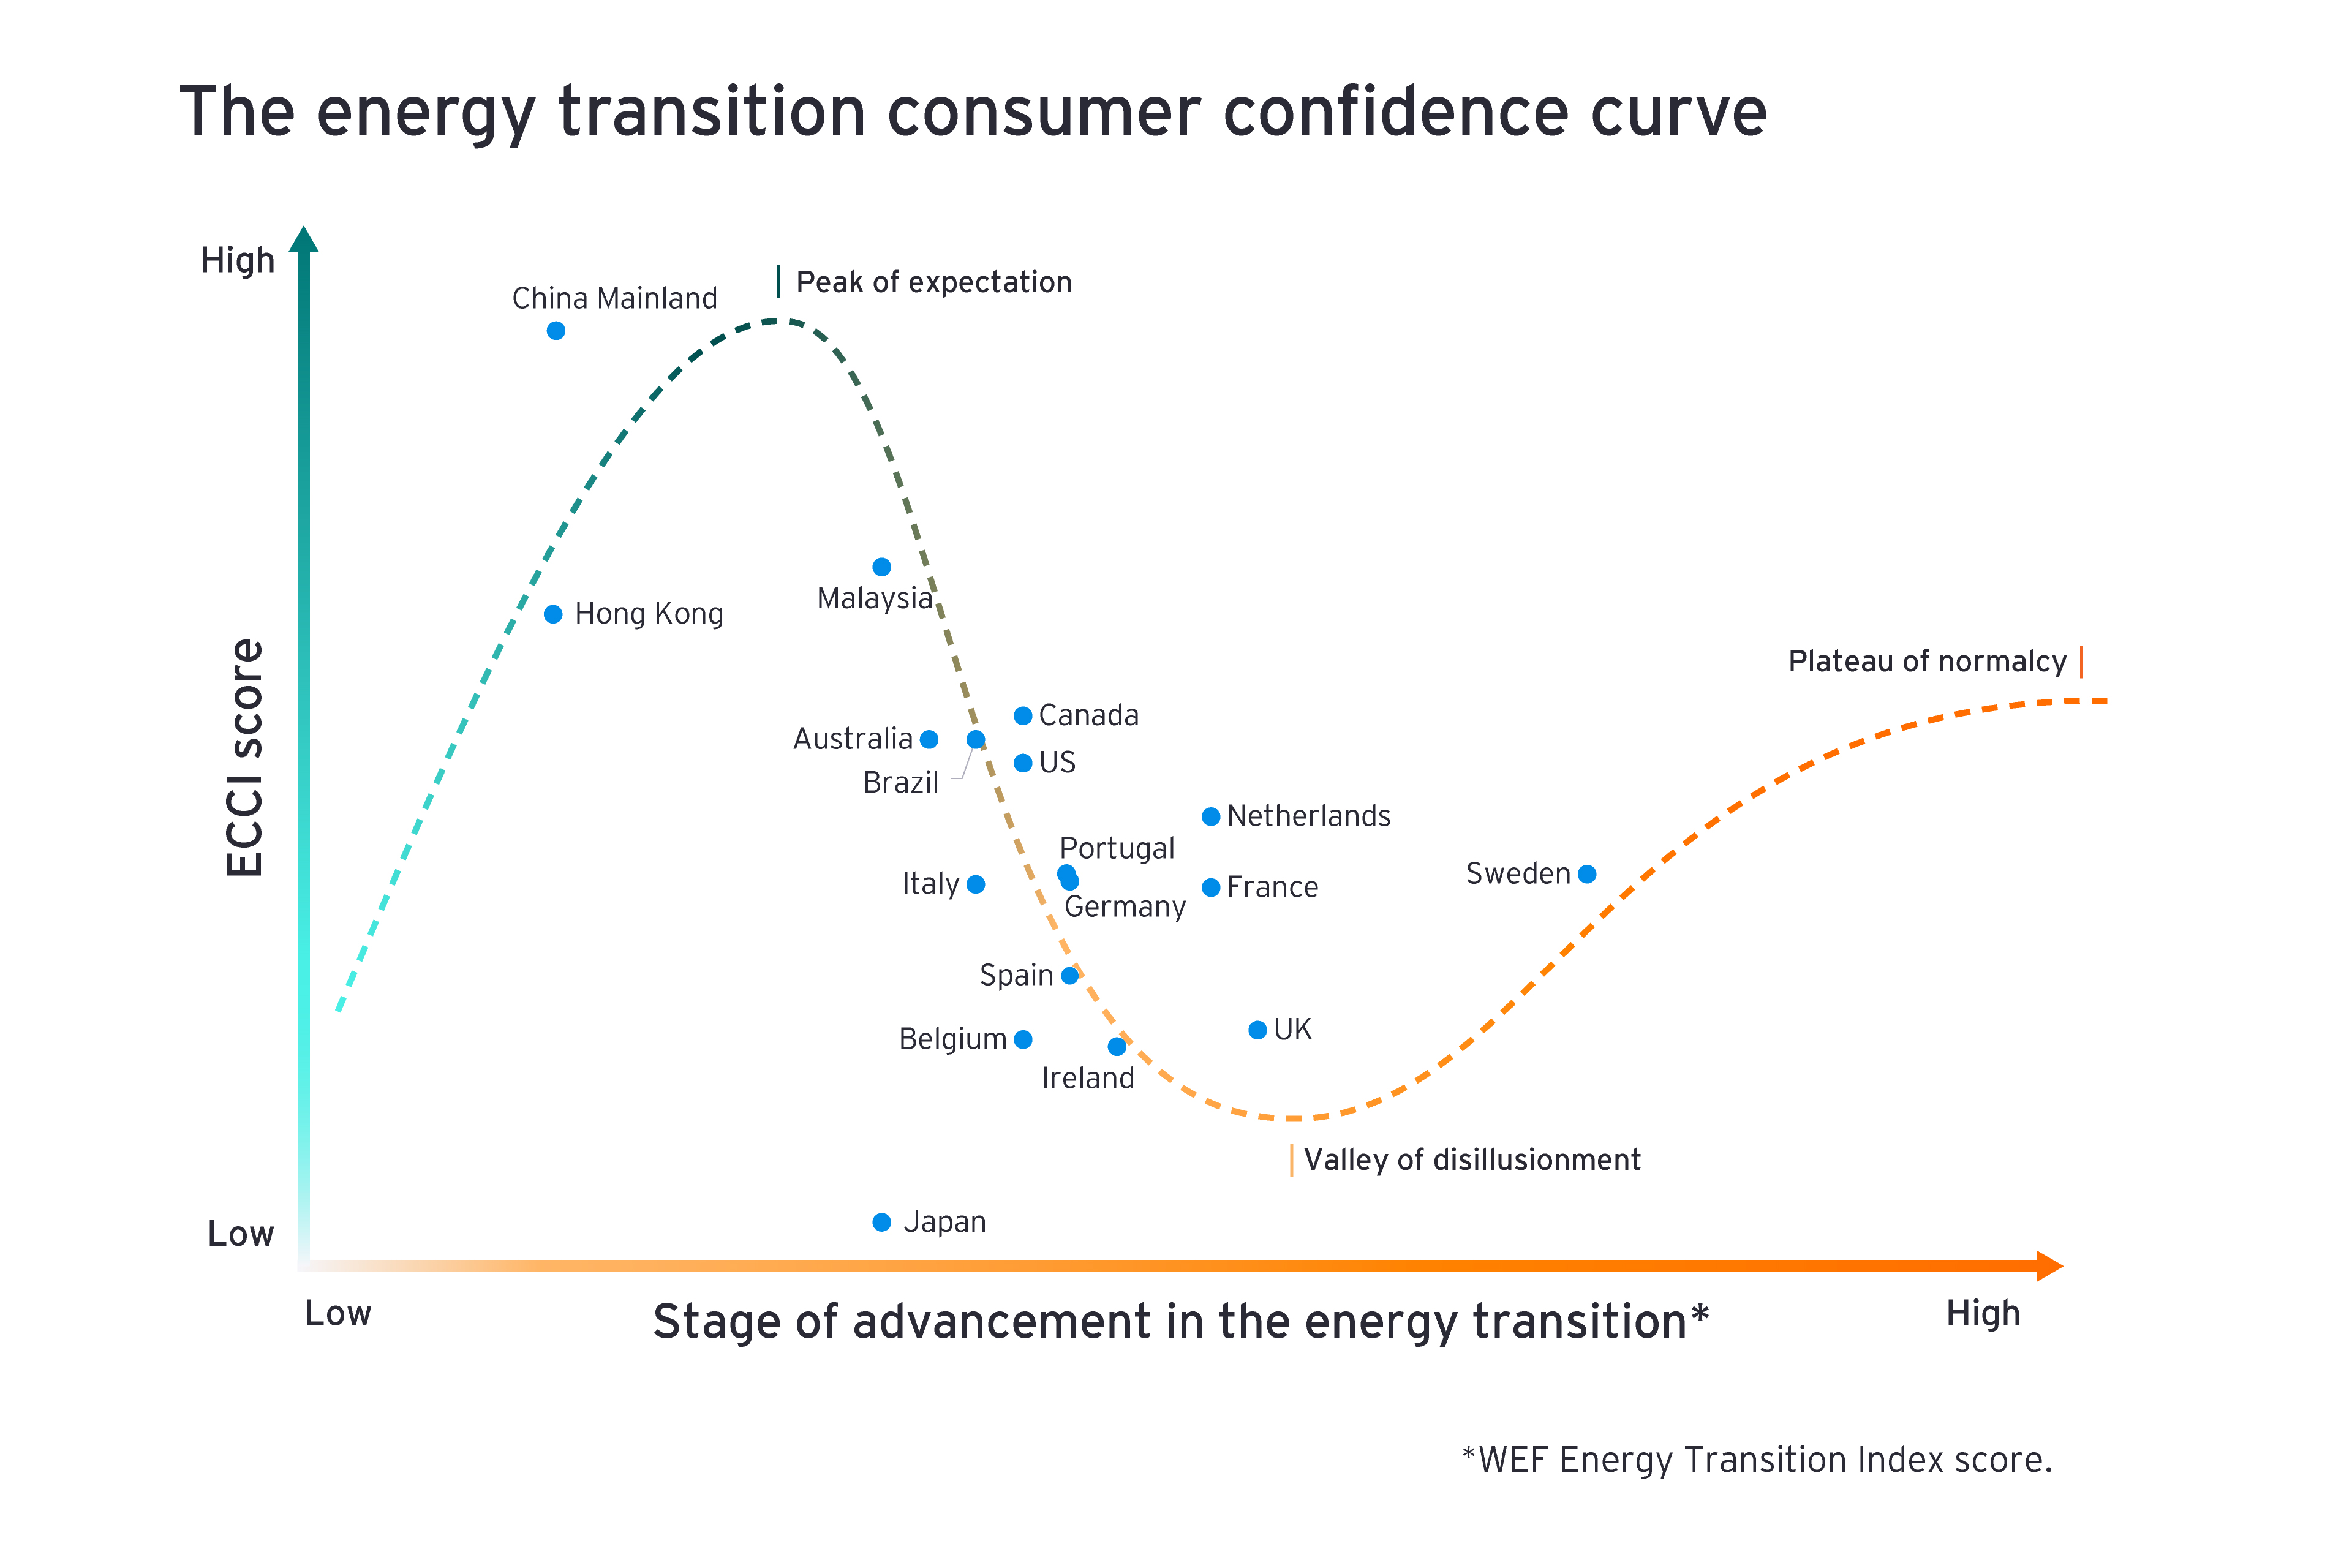 エネルギー転換の進展に伴う消費者信頼感の変化